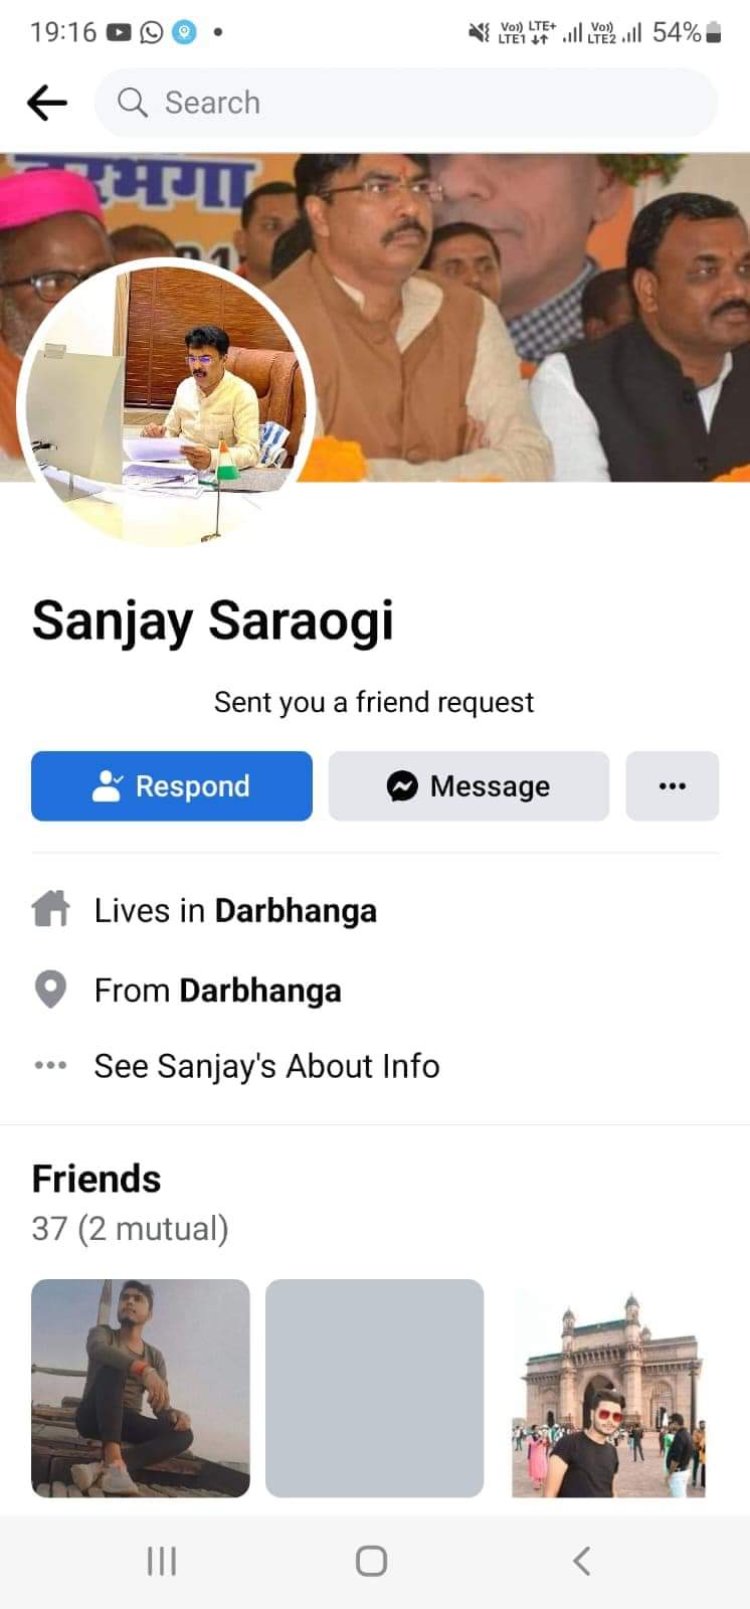 दरभंगा:- विधायक संजय सरावगी की फर्जी फेसबुक आईडी बना ठगी का प्रयास